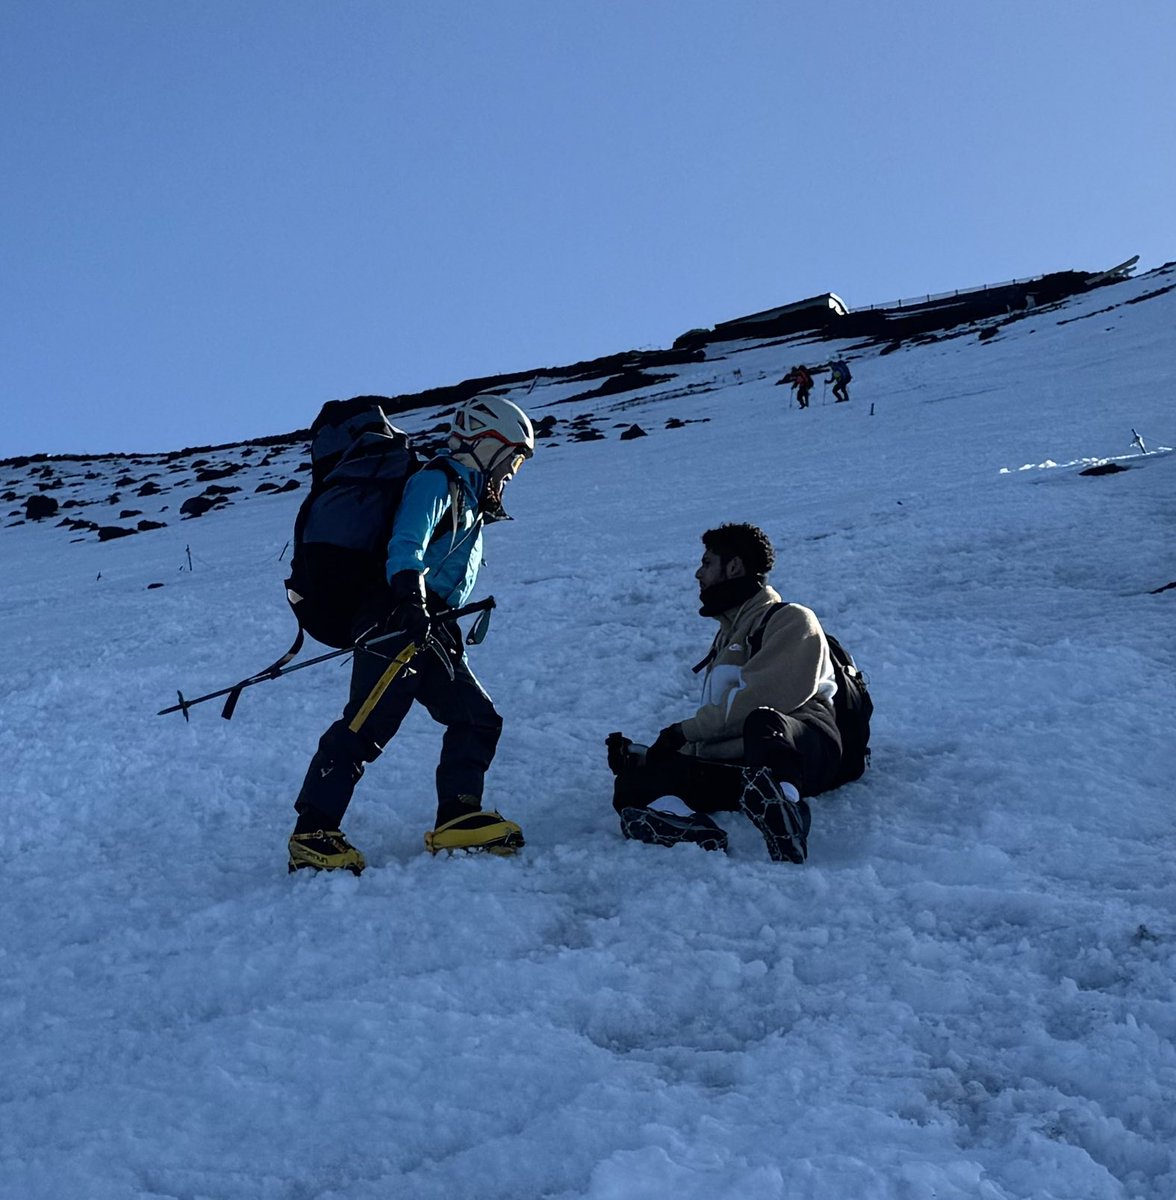 富士山にて、山頂から下降中に座り込んでモゾモゾする人影を見つけました。午後になり気温が下がりクラストし始めた雪面にチェーンスパイクをはいた外国人の登山者。大丈夫？と聞くと怖くて立てない、降りられないと言う。アックスもなく固くなり始めた雪面で滑ったら止まれず助からないかもしれない